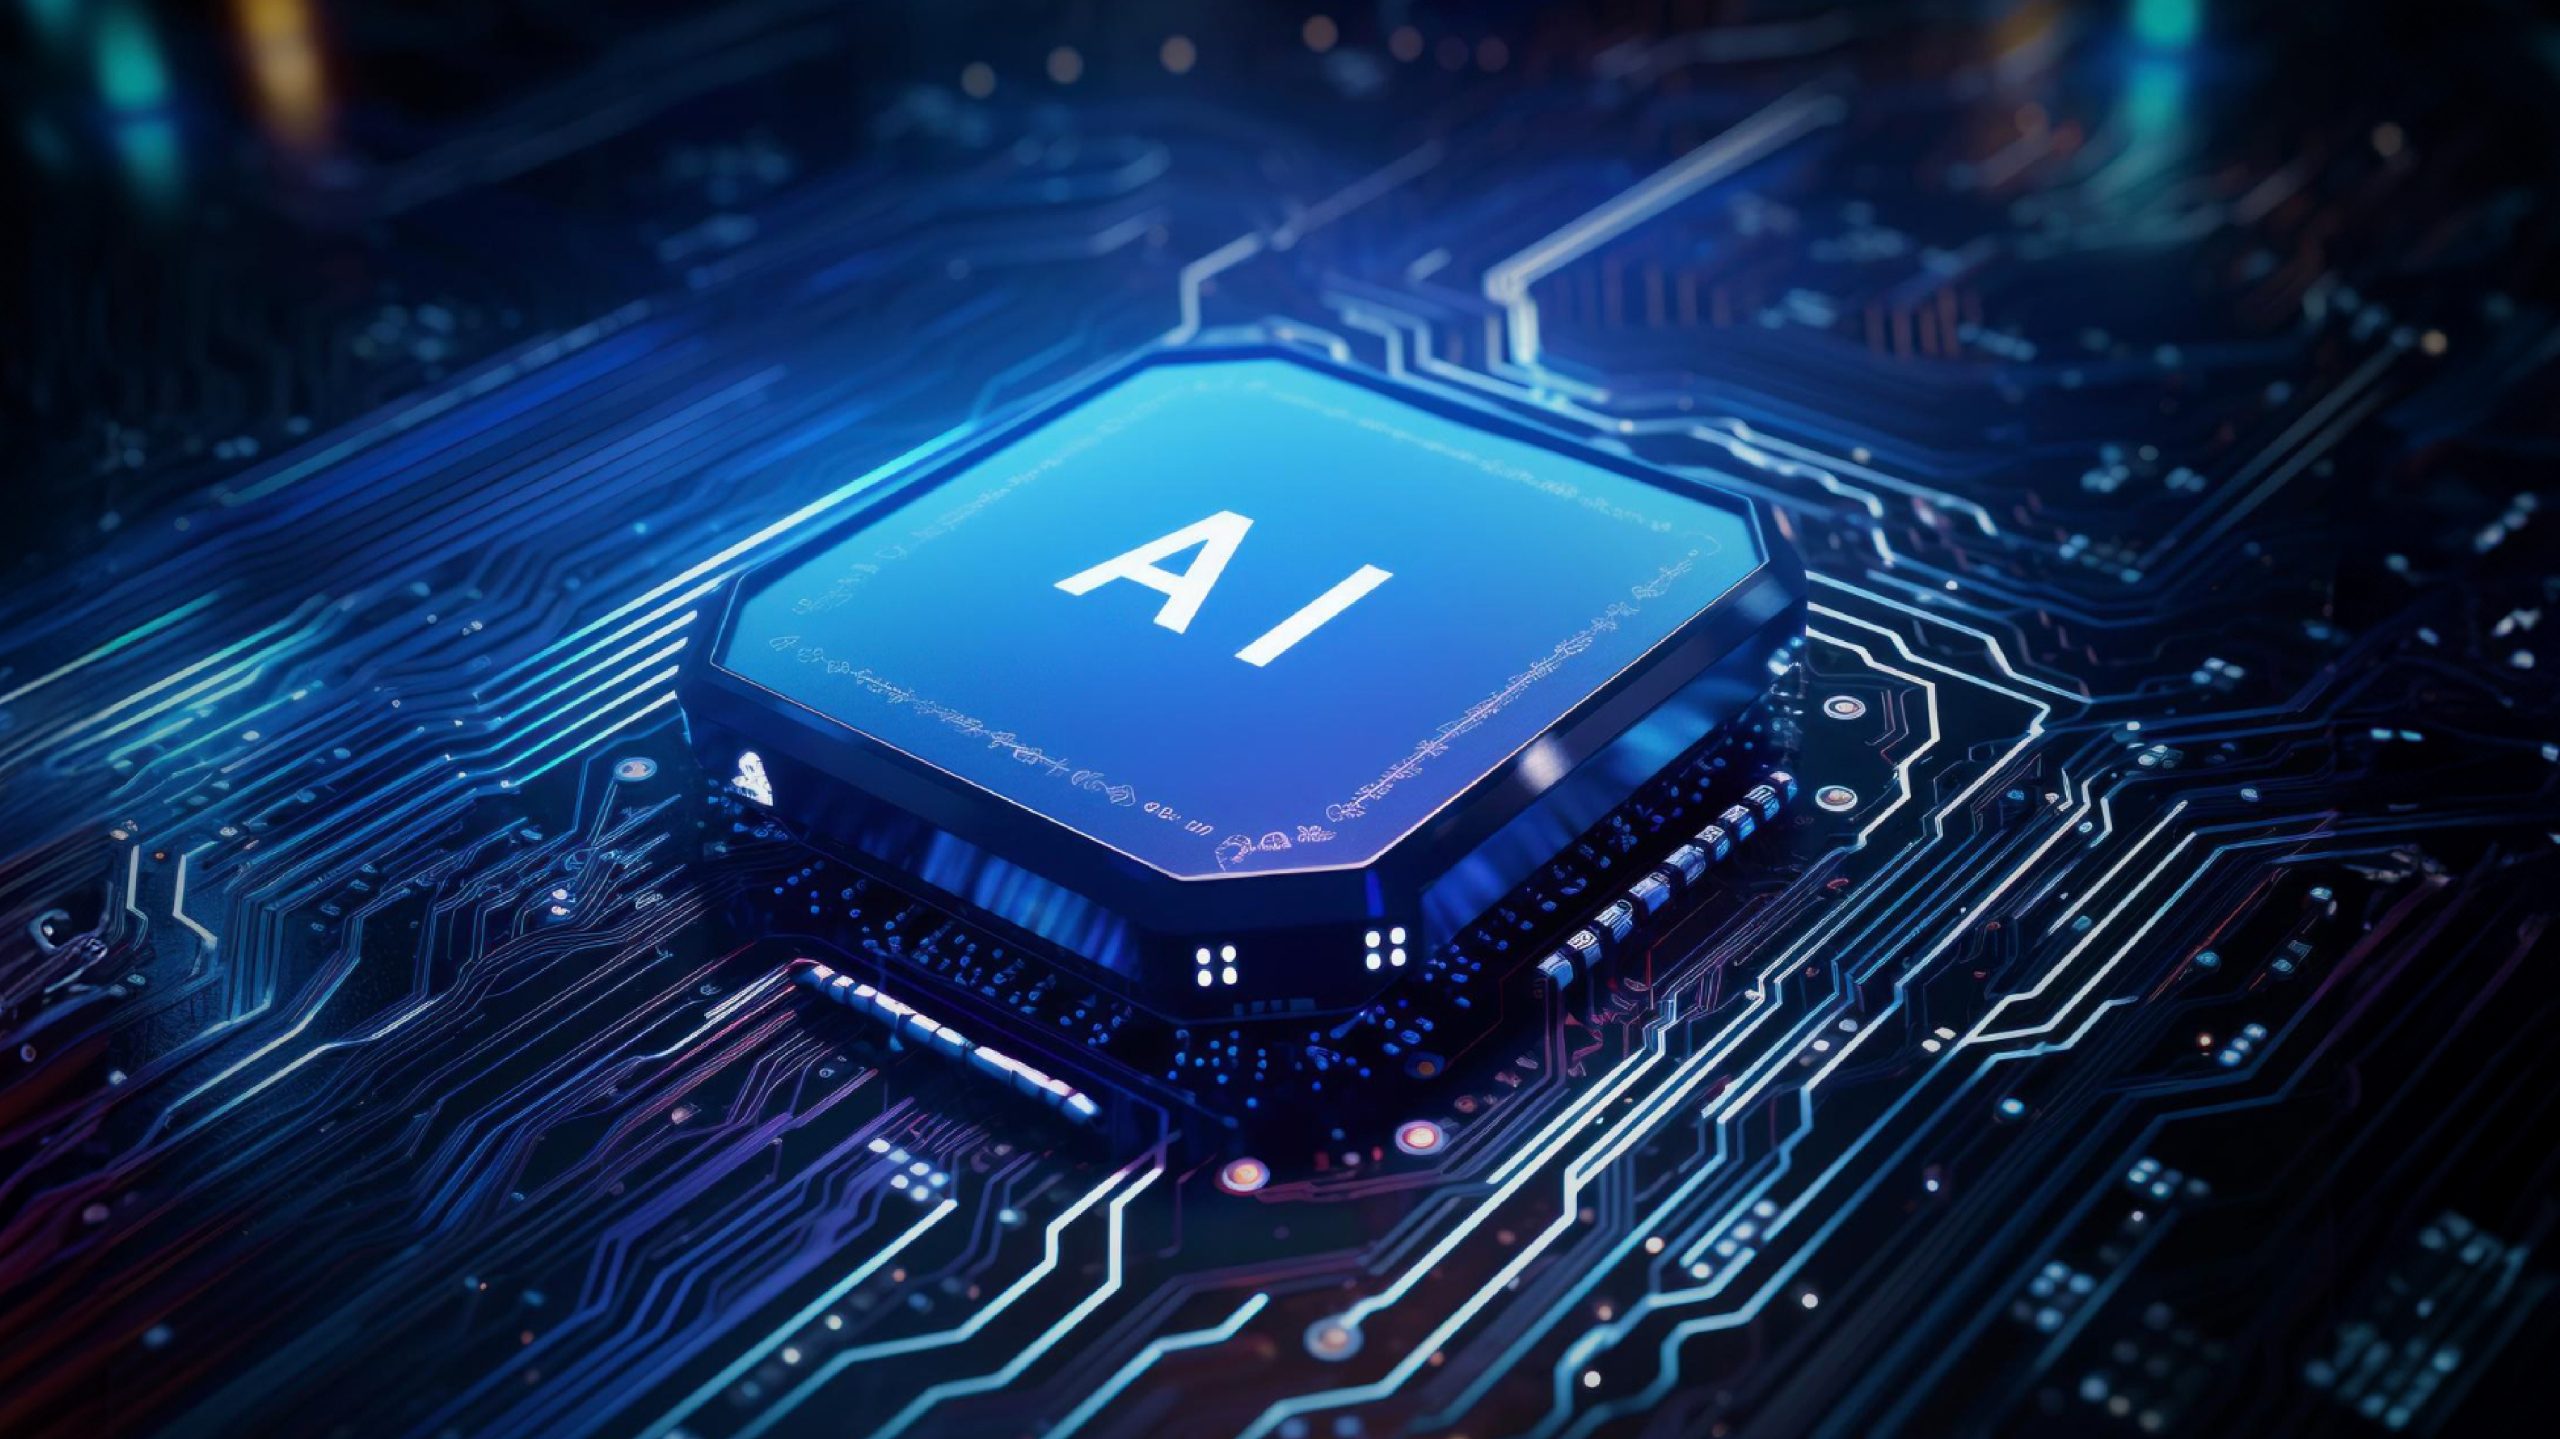 Intel thách thức sự thống trị của Nvidia với chip AI Gaudi 3 mới